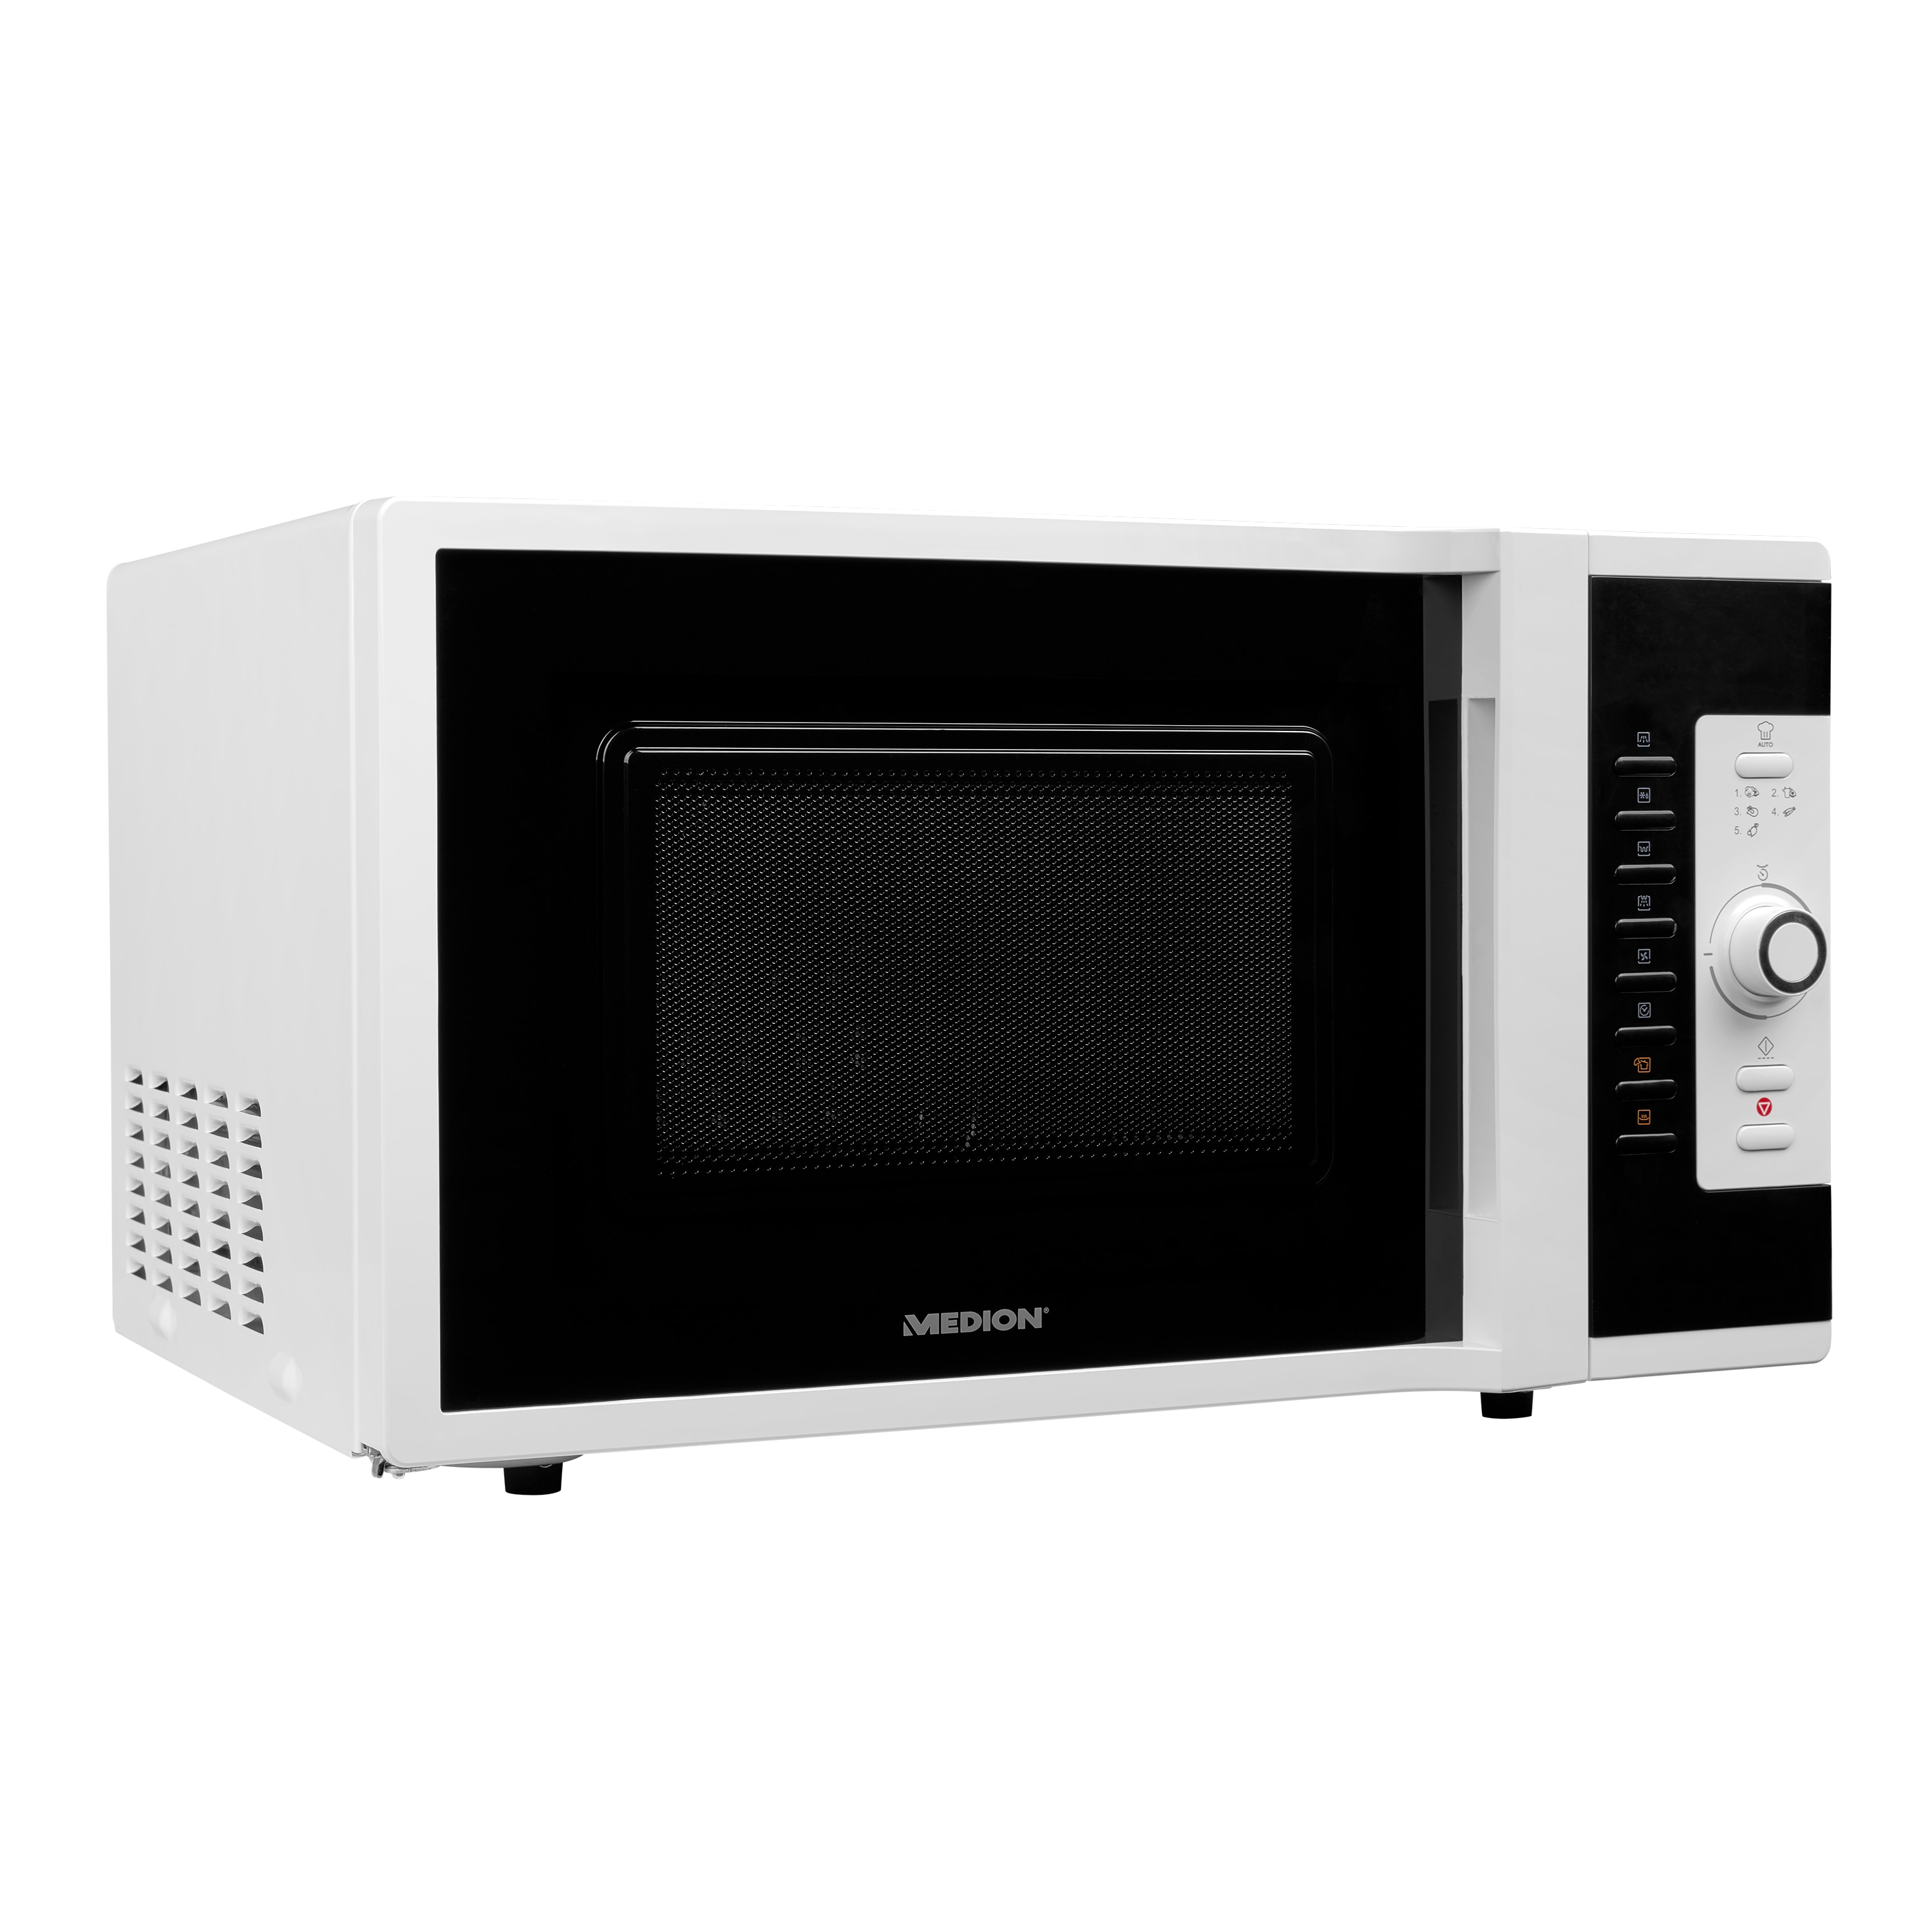 MEDION® 3in1 Mikrowelle MD 18502, Kombination aus Mikrowelle, Ofen und Grill, 5 Automatikprogramme, 28 L Garinnenraum, weiß